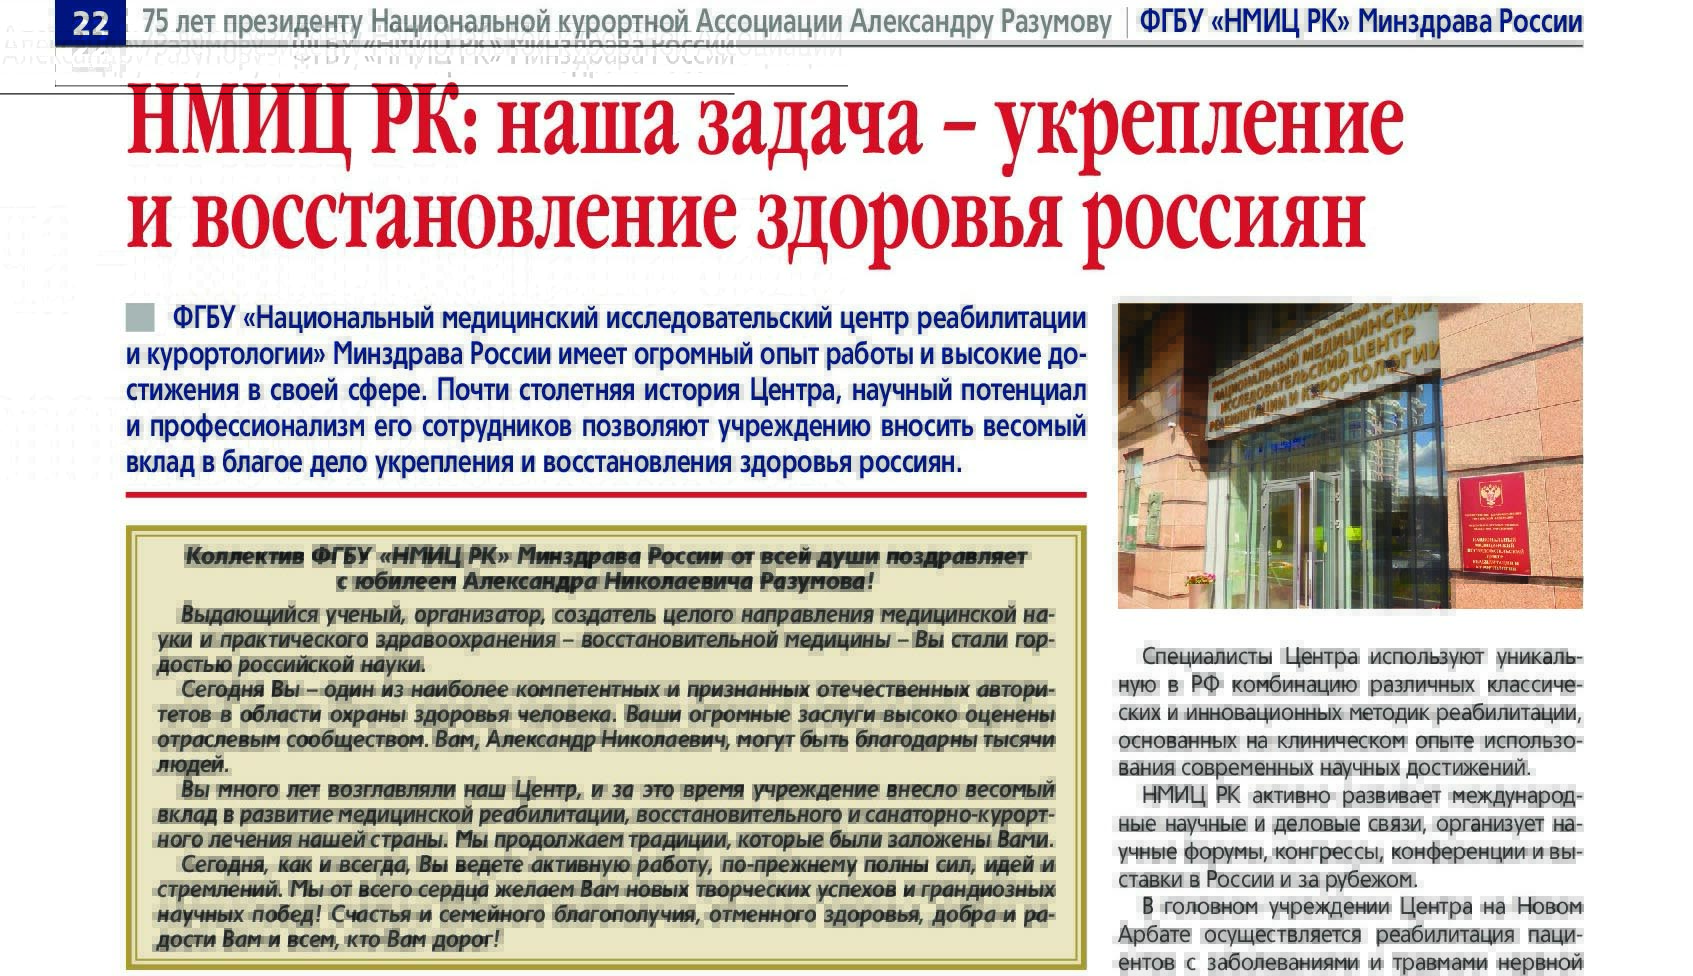 联邦出版物《商业俄罗斯》发表了一篇有关俄罗斯卫生部联邦国家预算机构“哈萨克斯坦共和国国家医学研究中心”活动的文章